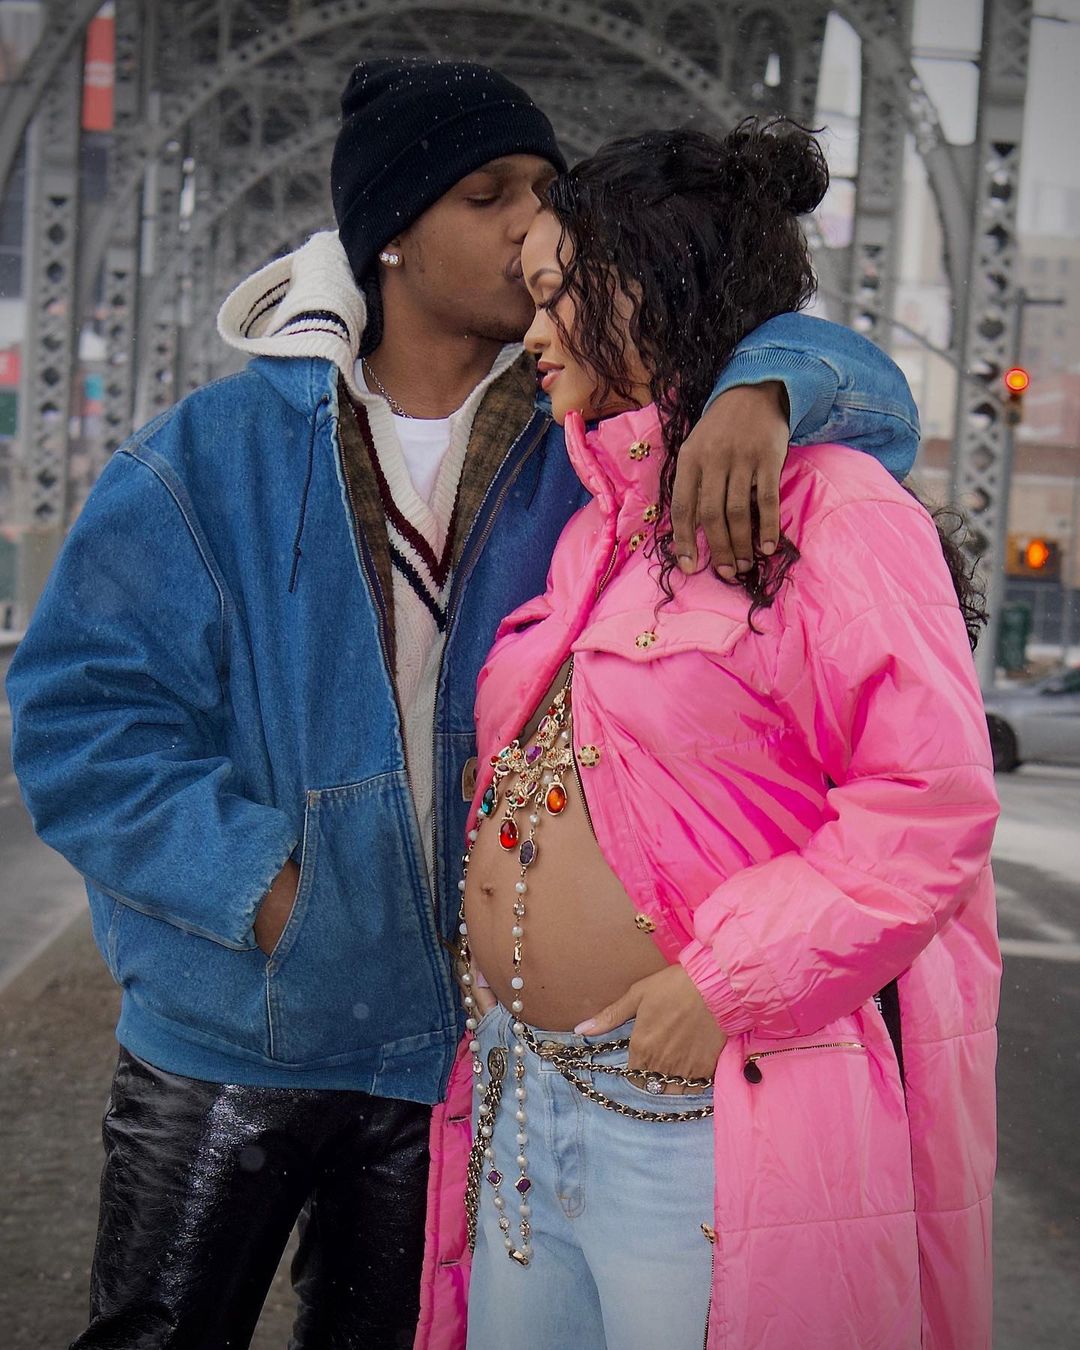 Рианна рассказала о своей беременности, выйдя так на прогулку с бойфрендом A$AP Rocky. Фото: Instagram.com/badgalriri/